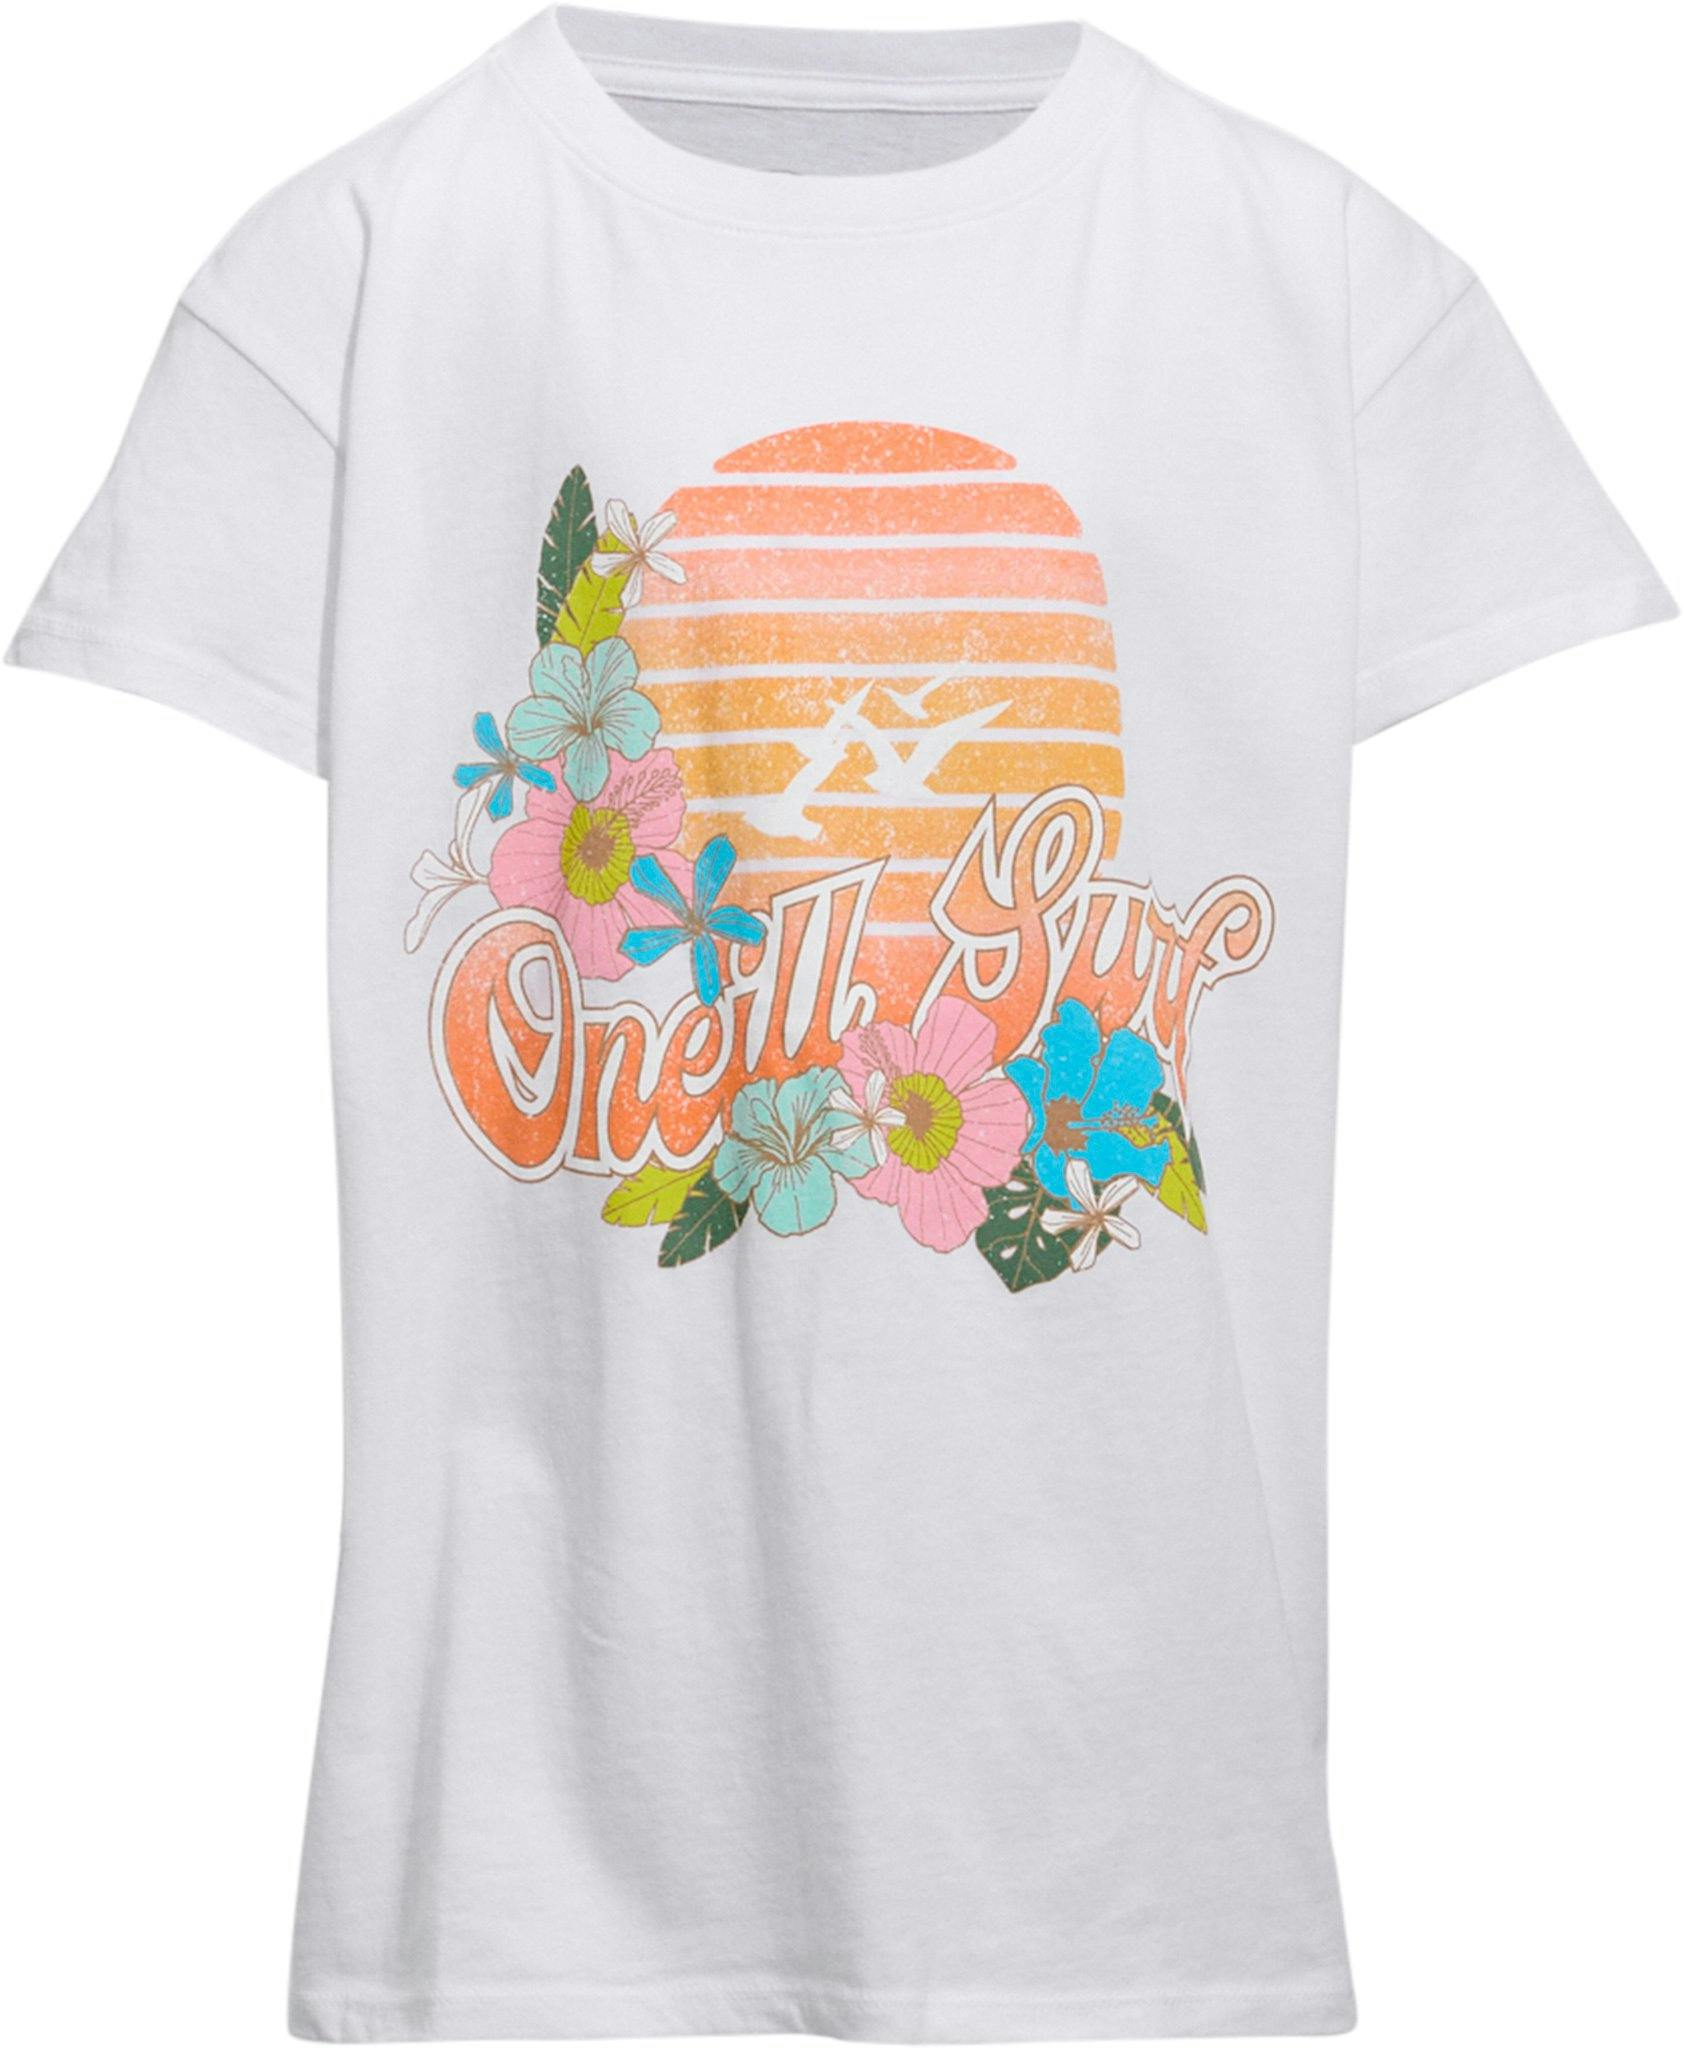 Product image for Sunrise T-Shirt - Girls